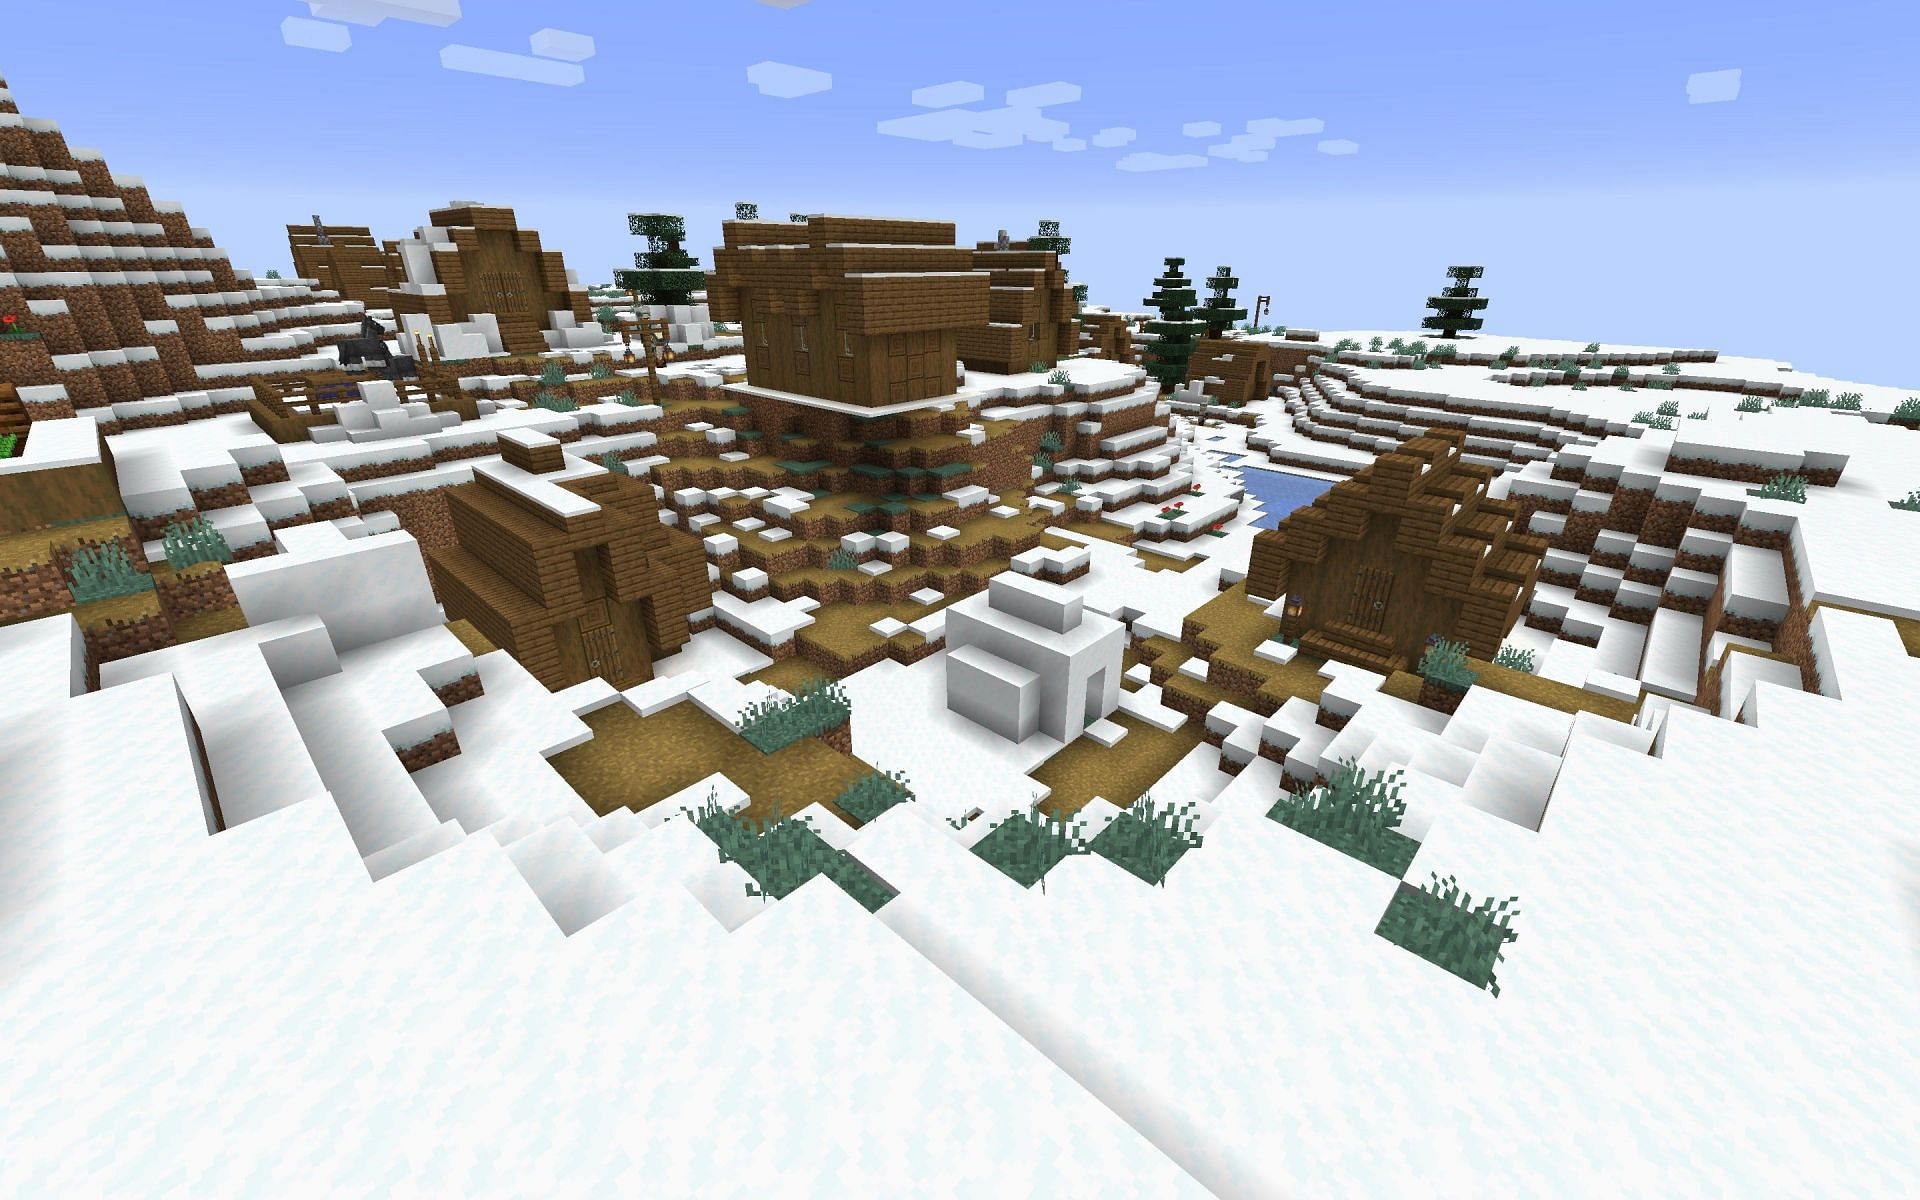 Les villages de neige regorgent de cette graine, permettant une collecte facile des ressources (Image via Mojang)